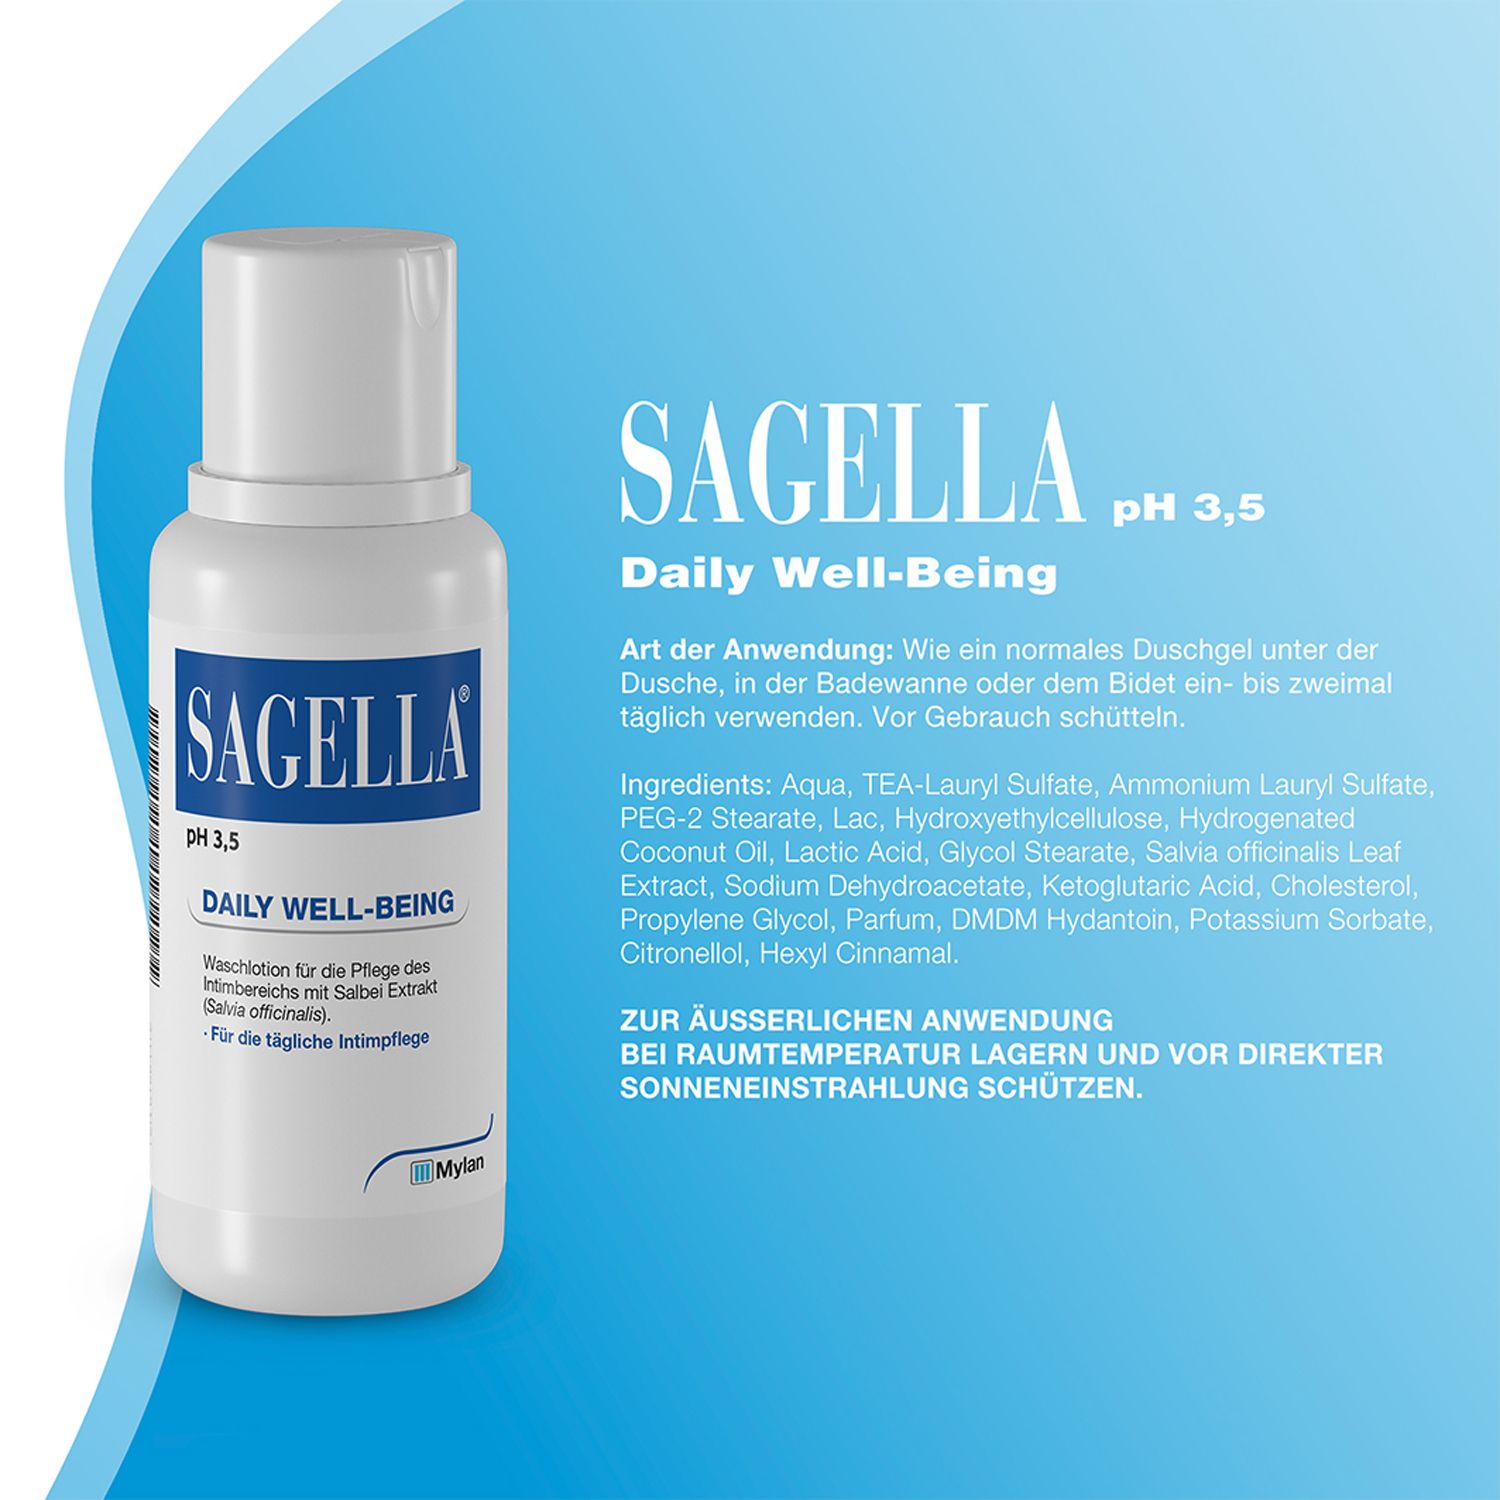 SAGELLA pH 3,5 – DAILY WELL-BEING: Intimwaschlotion mit Milchsäure und Salbei-Extrakt